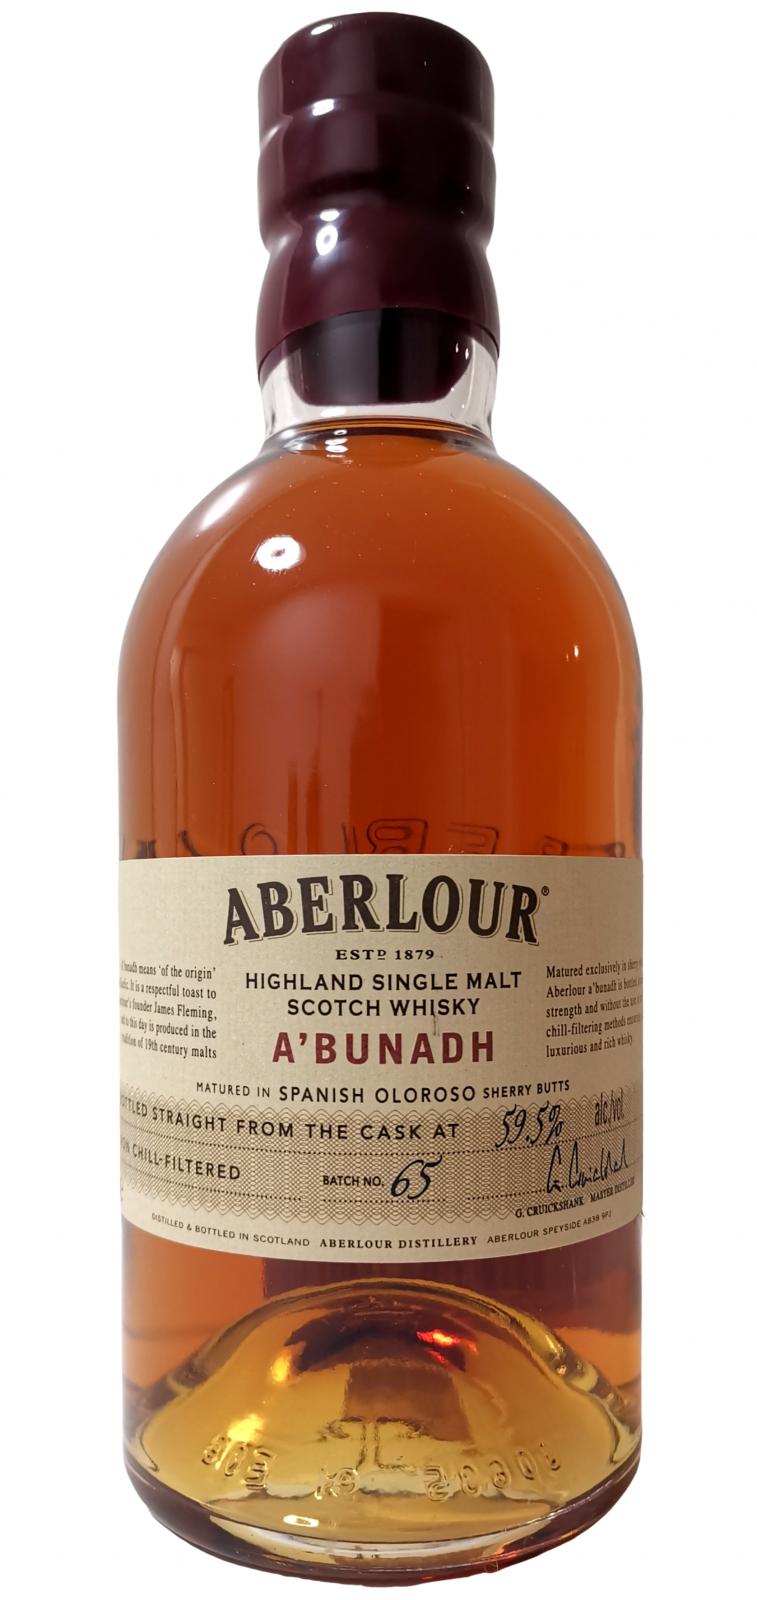 Aberlour A'bunadh batch #65